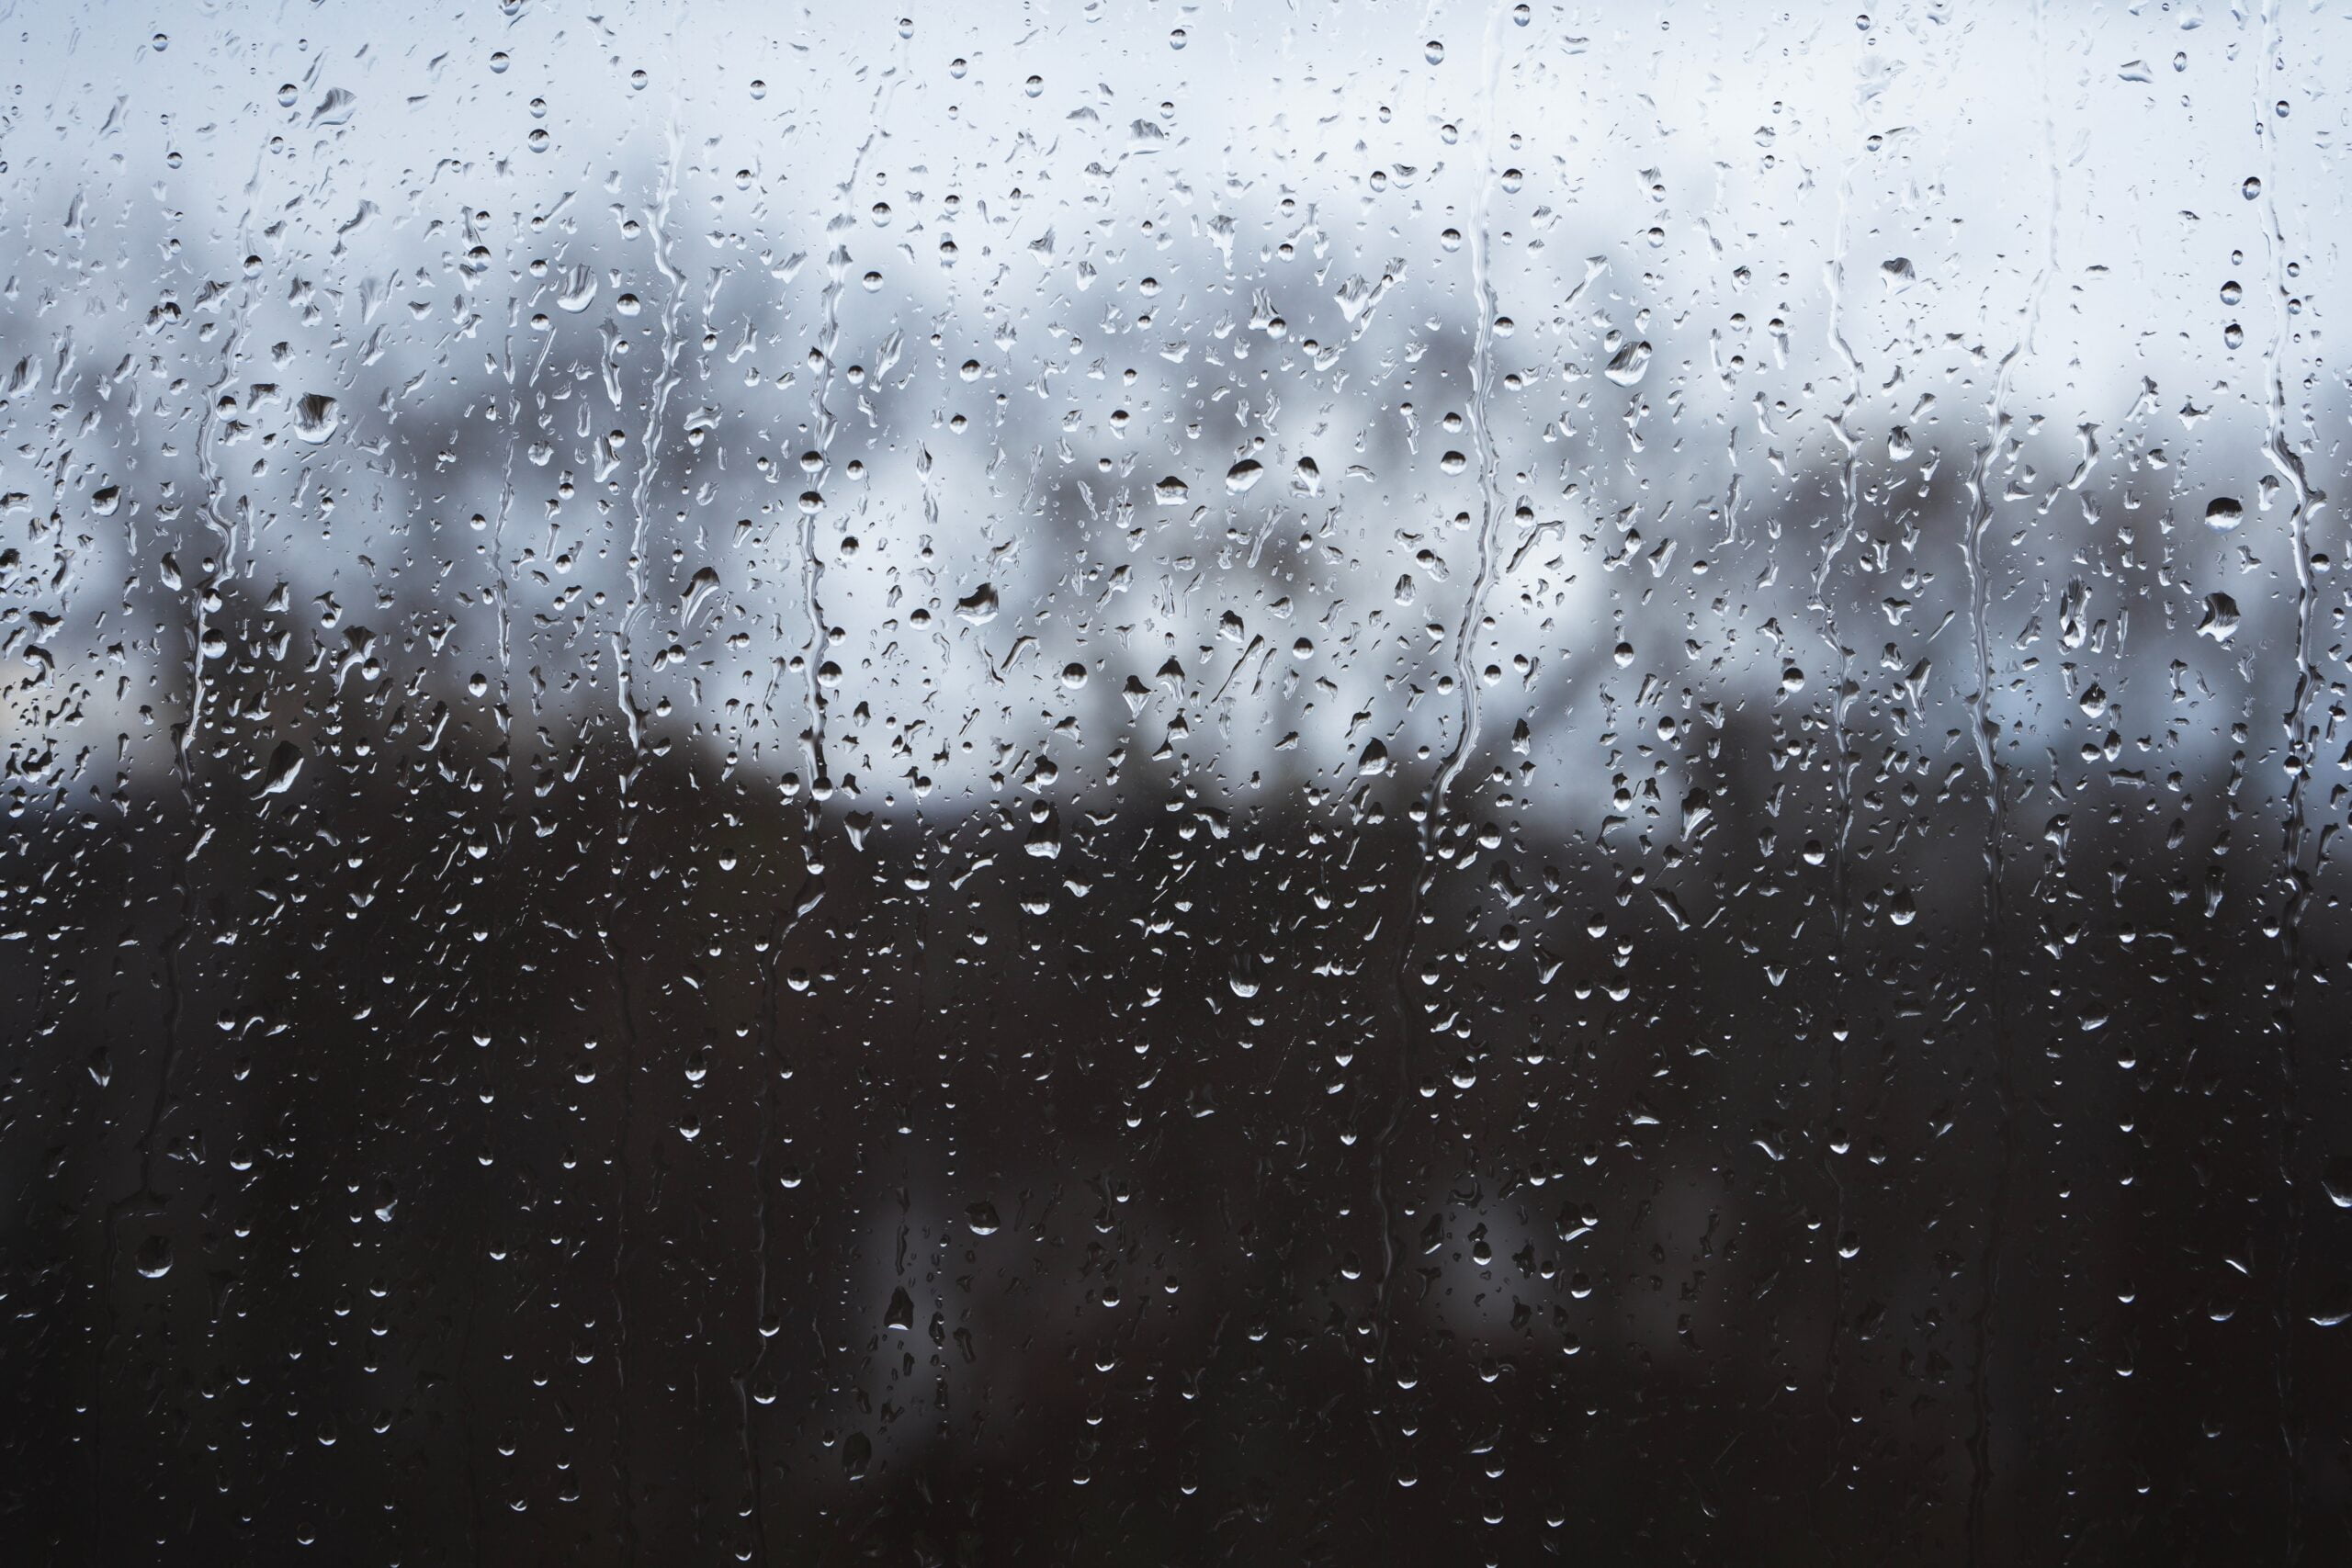 Foto de gotas de chuva em janela.